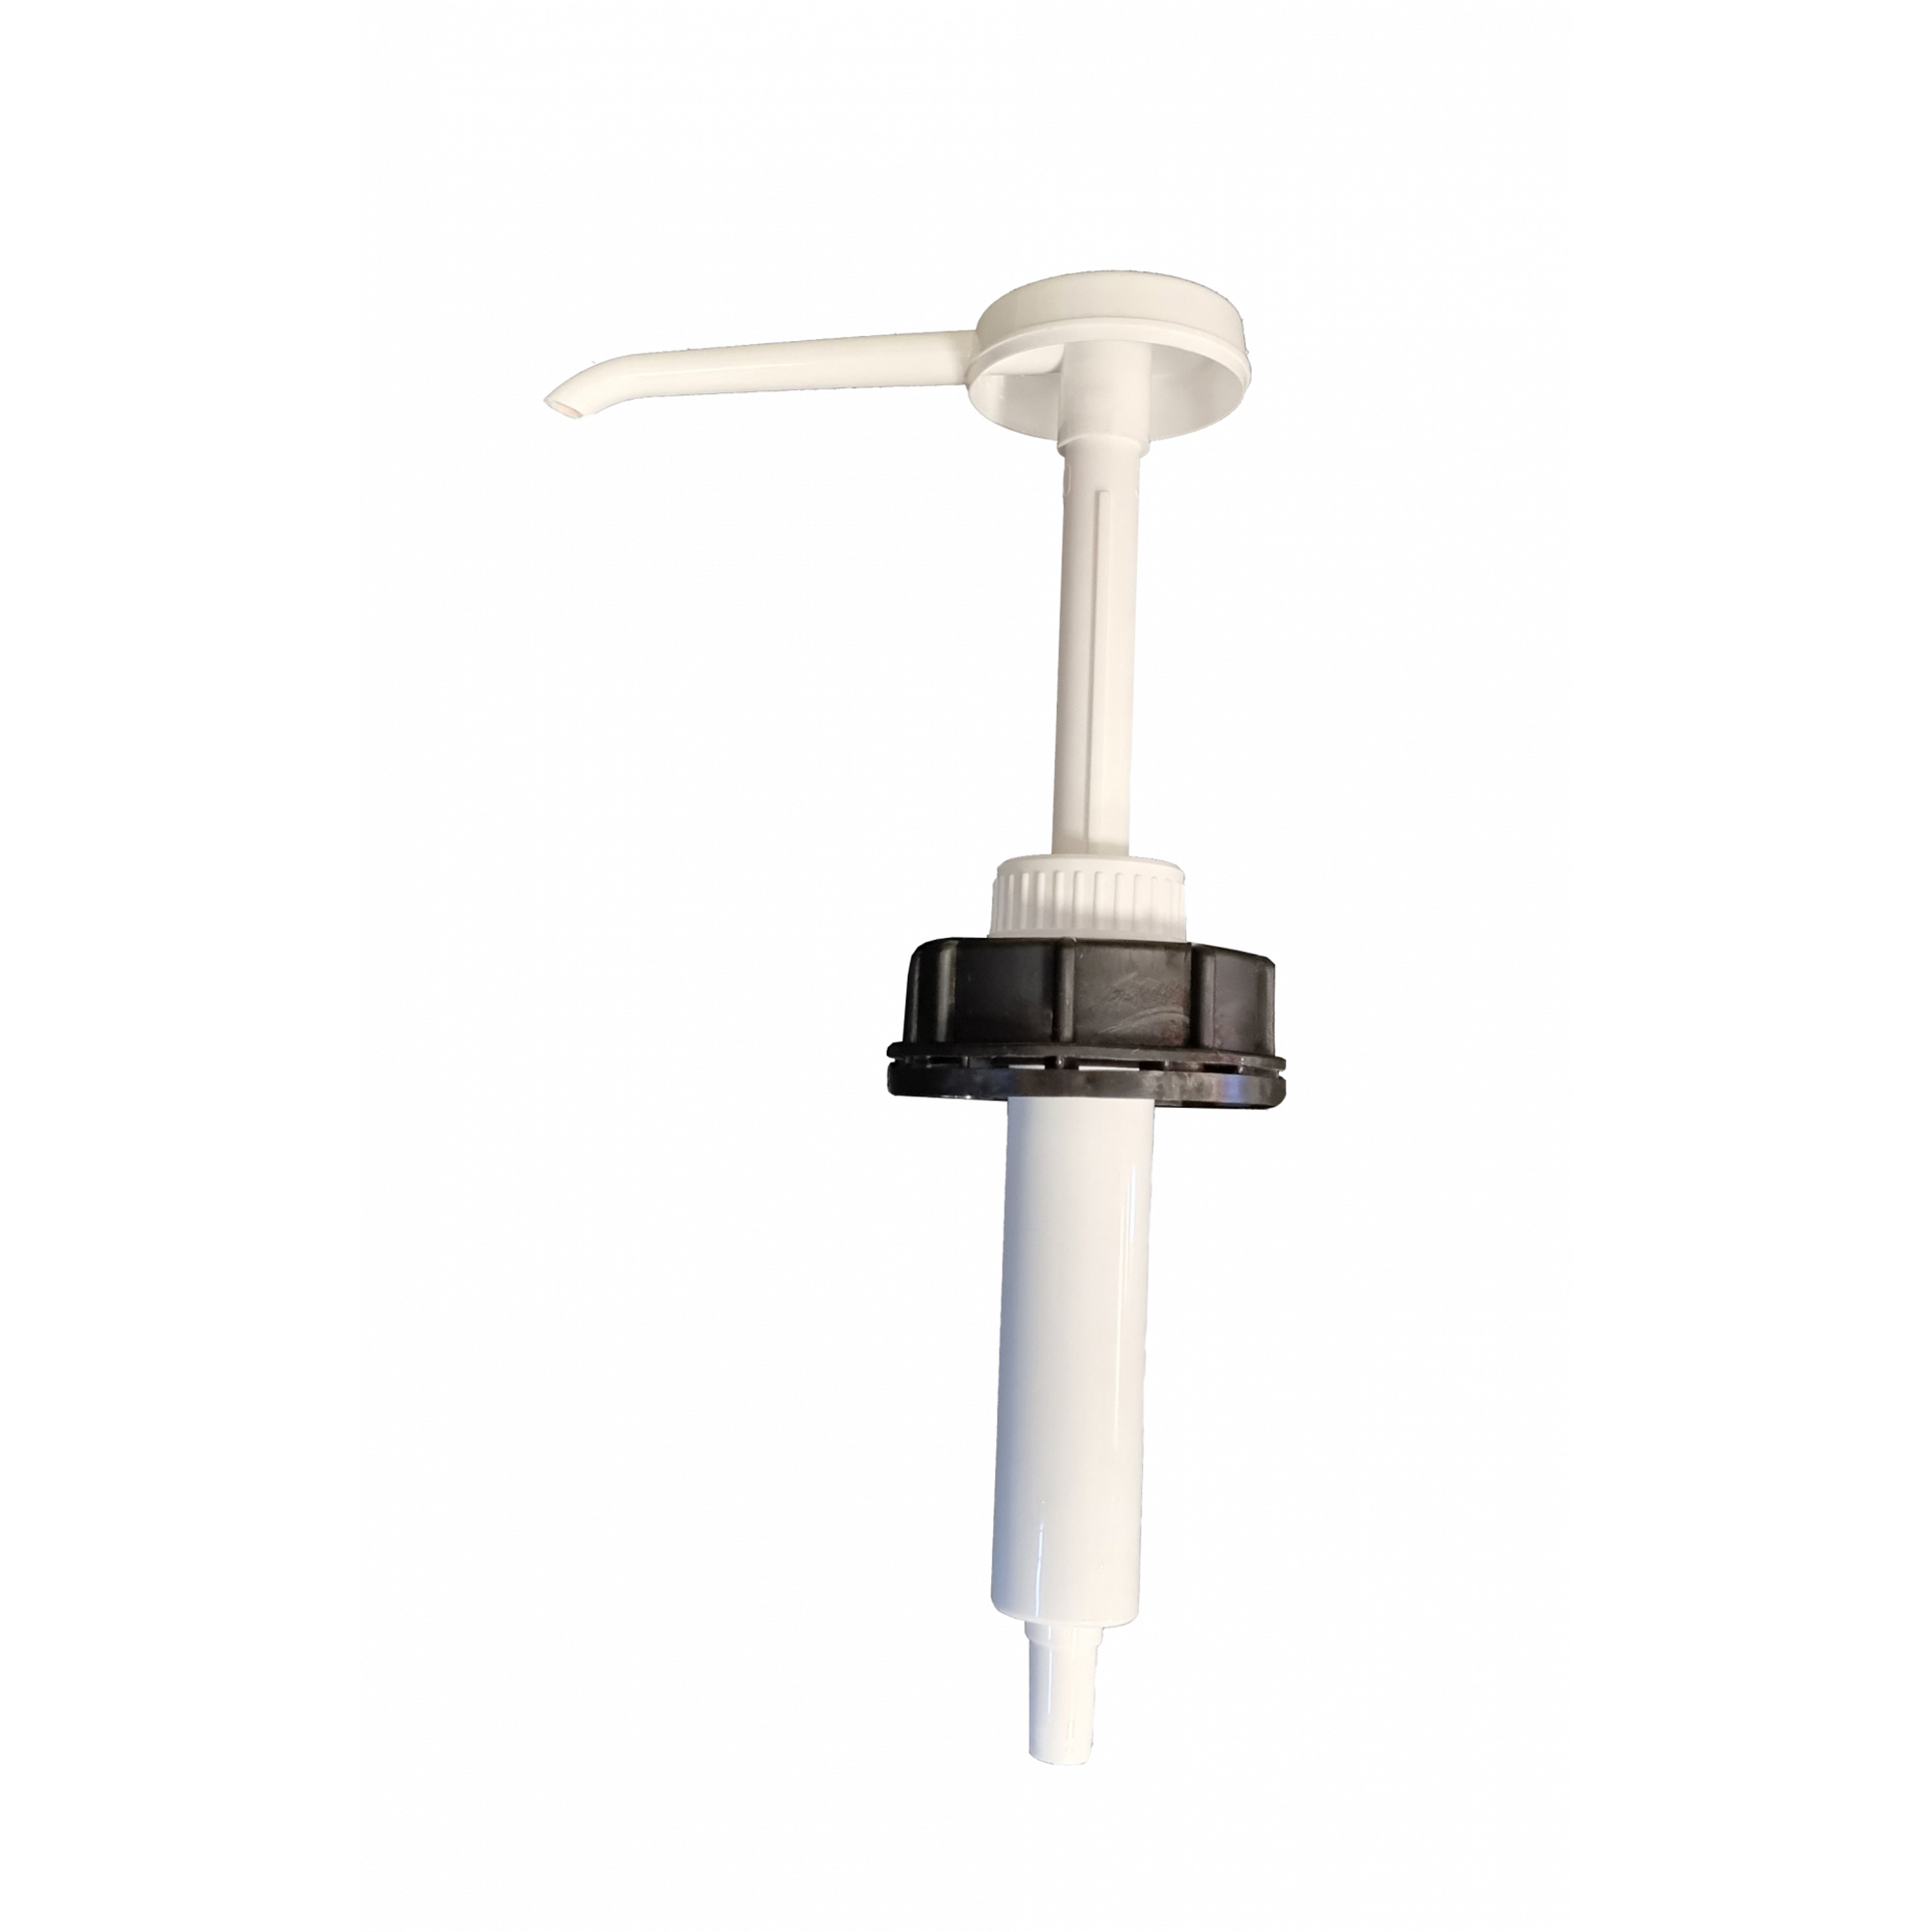 Brug Granuflex Pumpe til Pro Cleaner 3in1 Dunk til en forbedret oplevelse